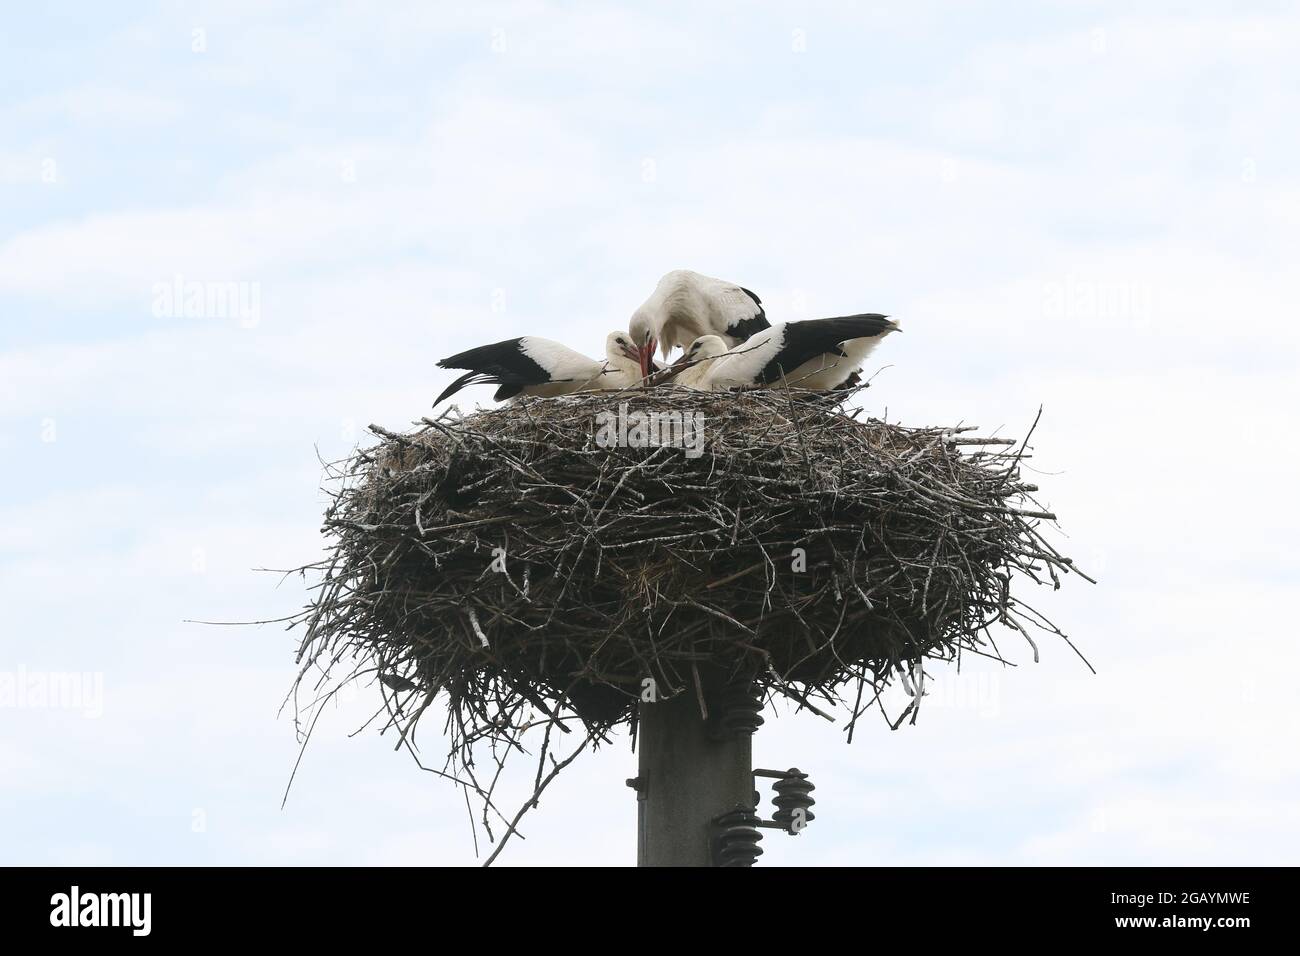 08/01/2021, Alemania, Brandeburgo, Ihlow (Oberbarnim). Cigüeñas jóvenes alimentándose en el nido de cigüeñas. Foto de stock